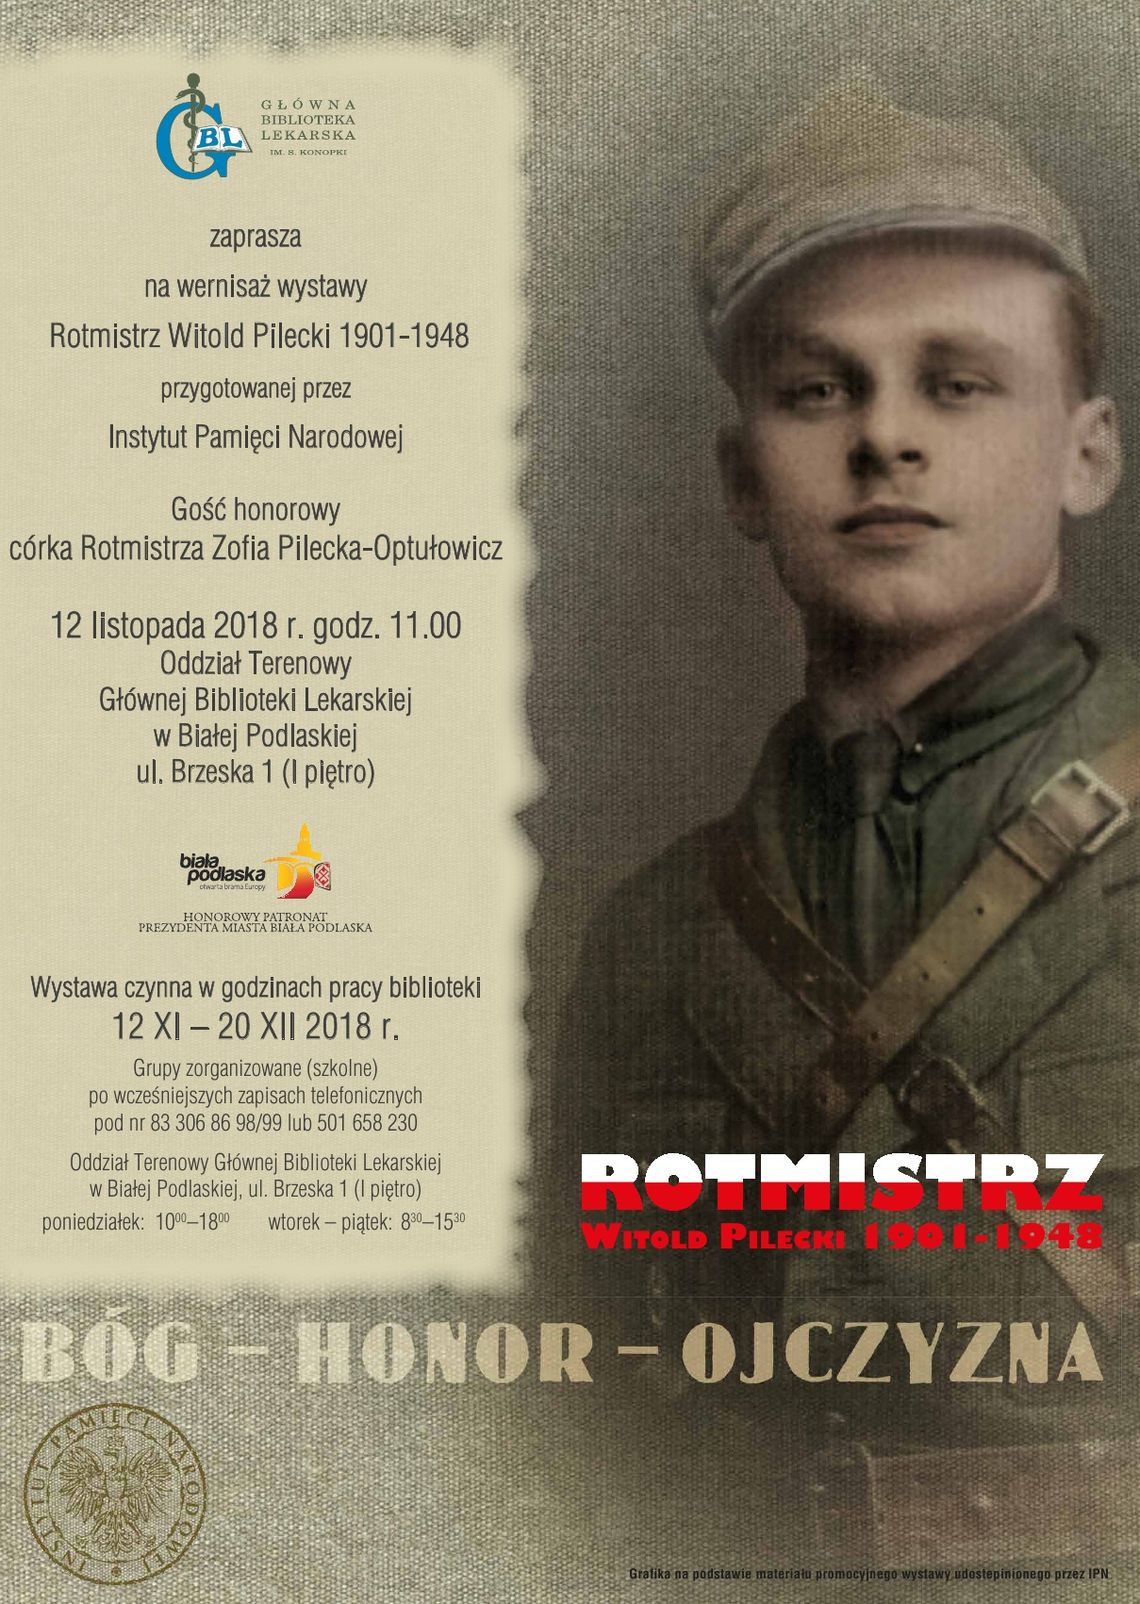 "Rotmistrz Witold Pilecki 1901-1948"